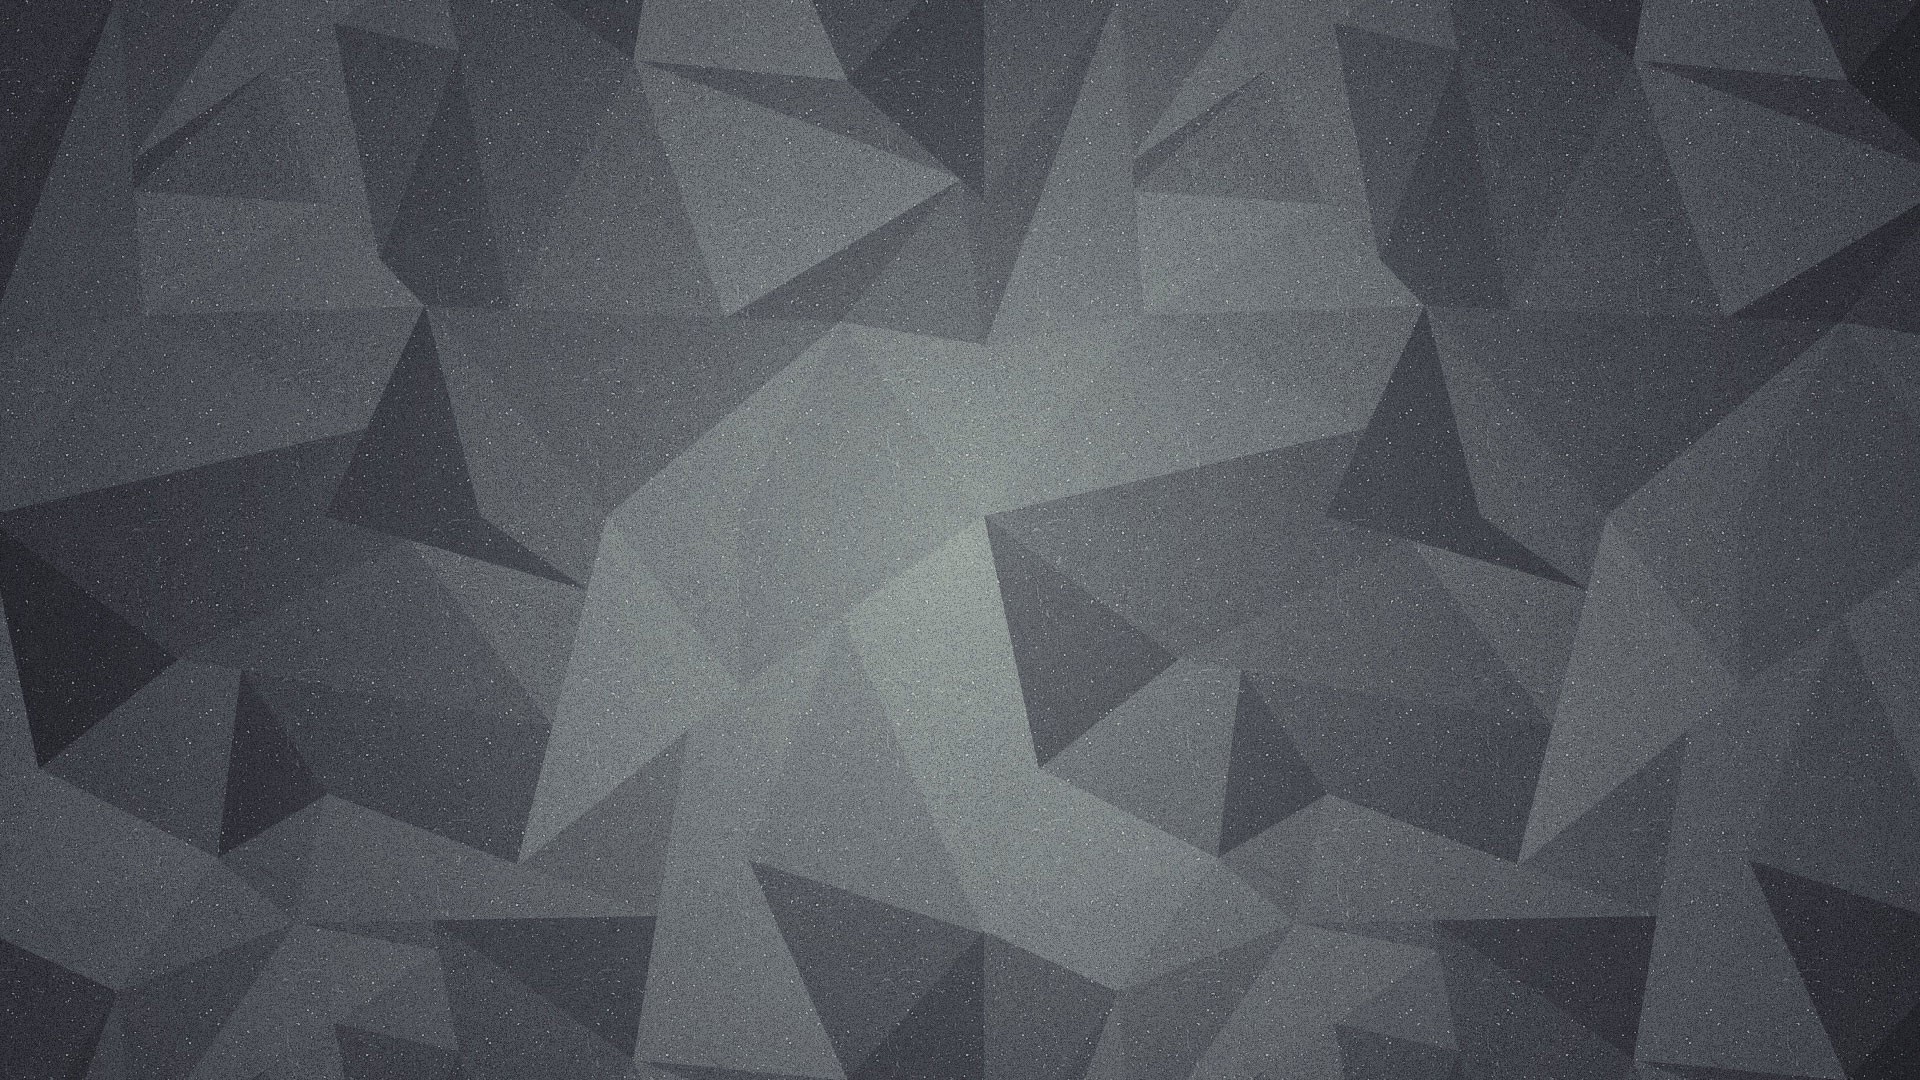 Abstract grey wallpaper